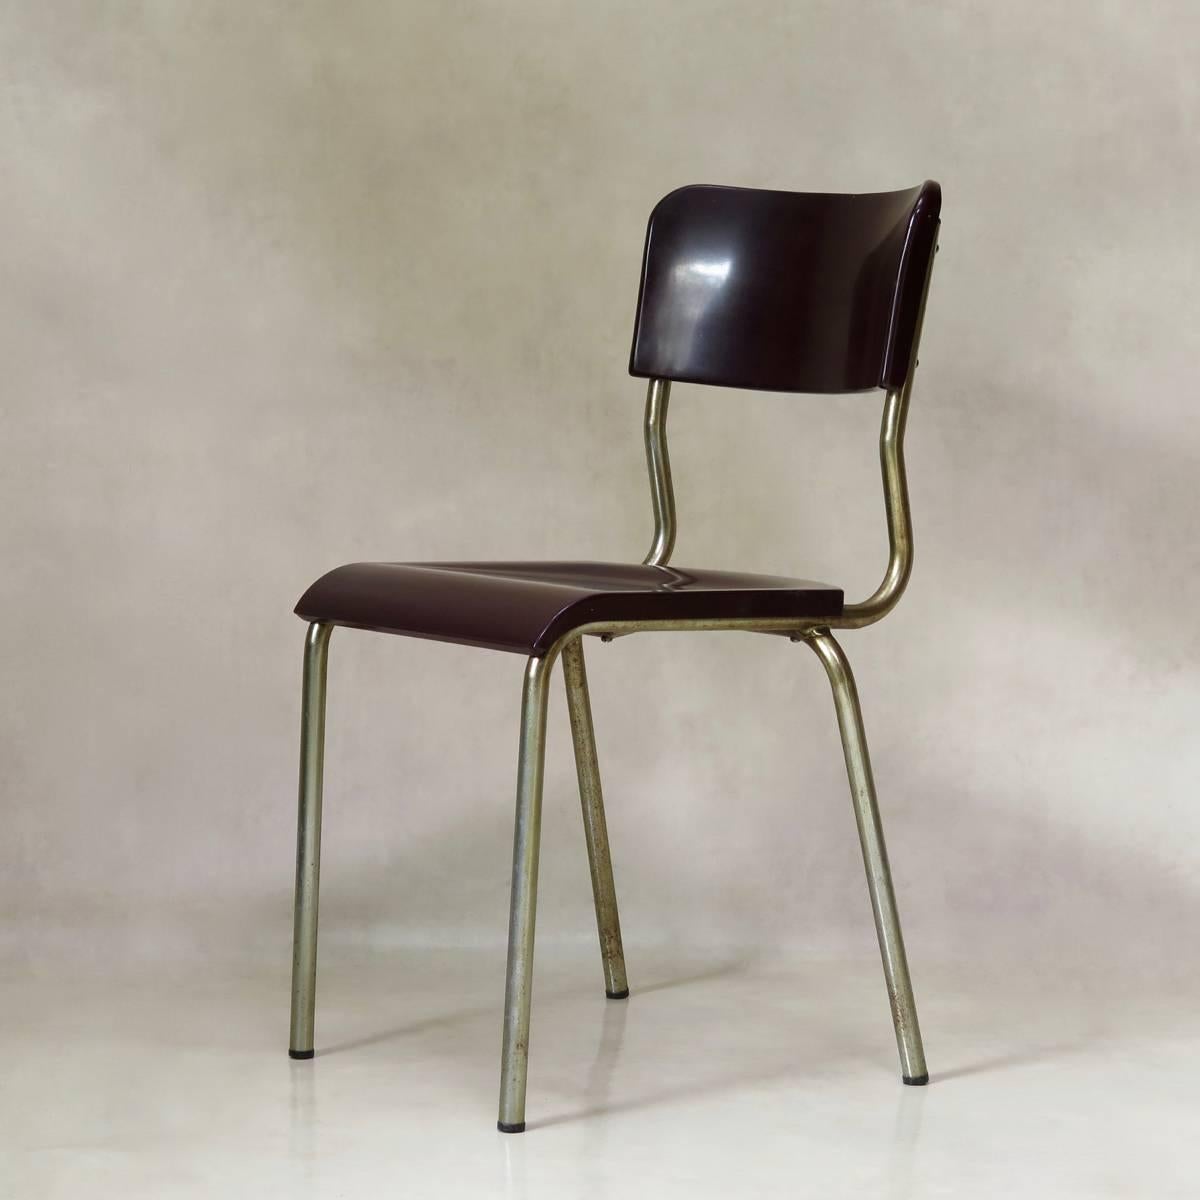 Bel ensemble de chaises Mid-Century du designer français René Herbst, connu pour son esthétique fonctionnelle et minimaliste. 
Les sièges et les dossiers sont en bakélite moulée, et les structures sont en métal chromé.
Il y a deux couleurs :